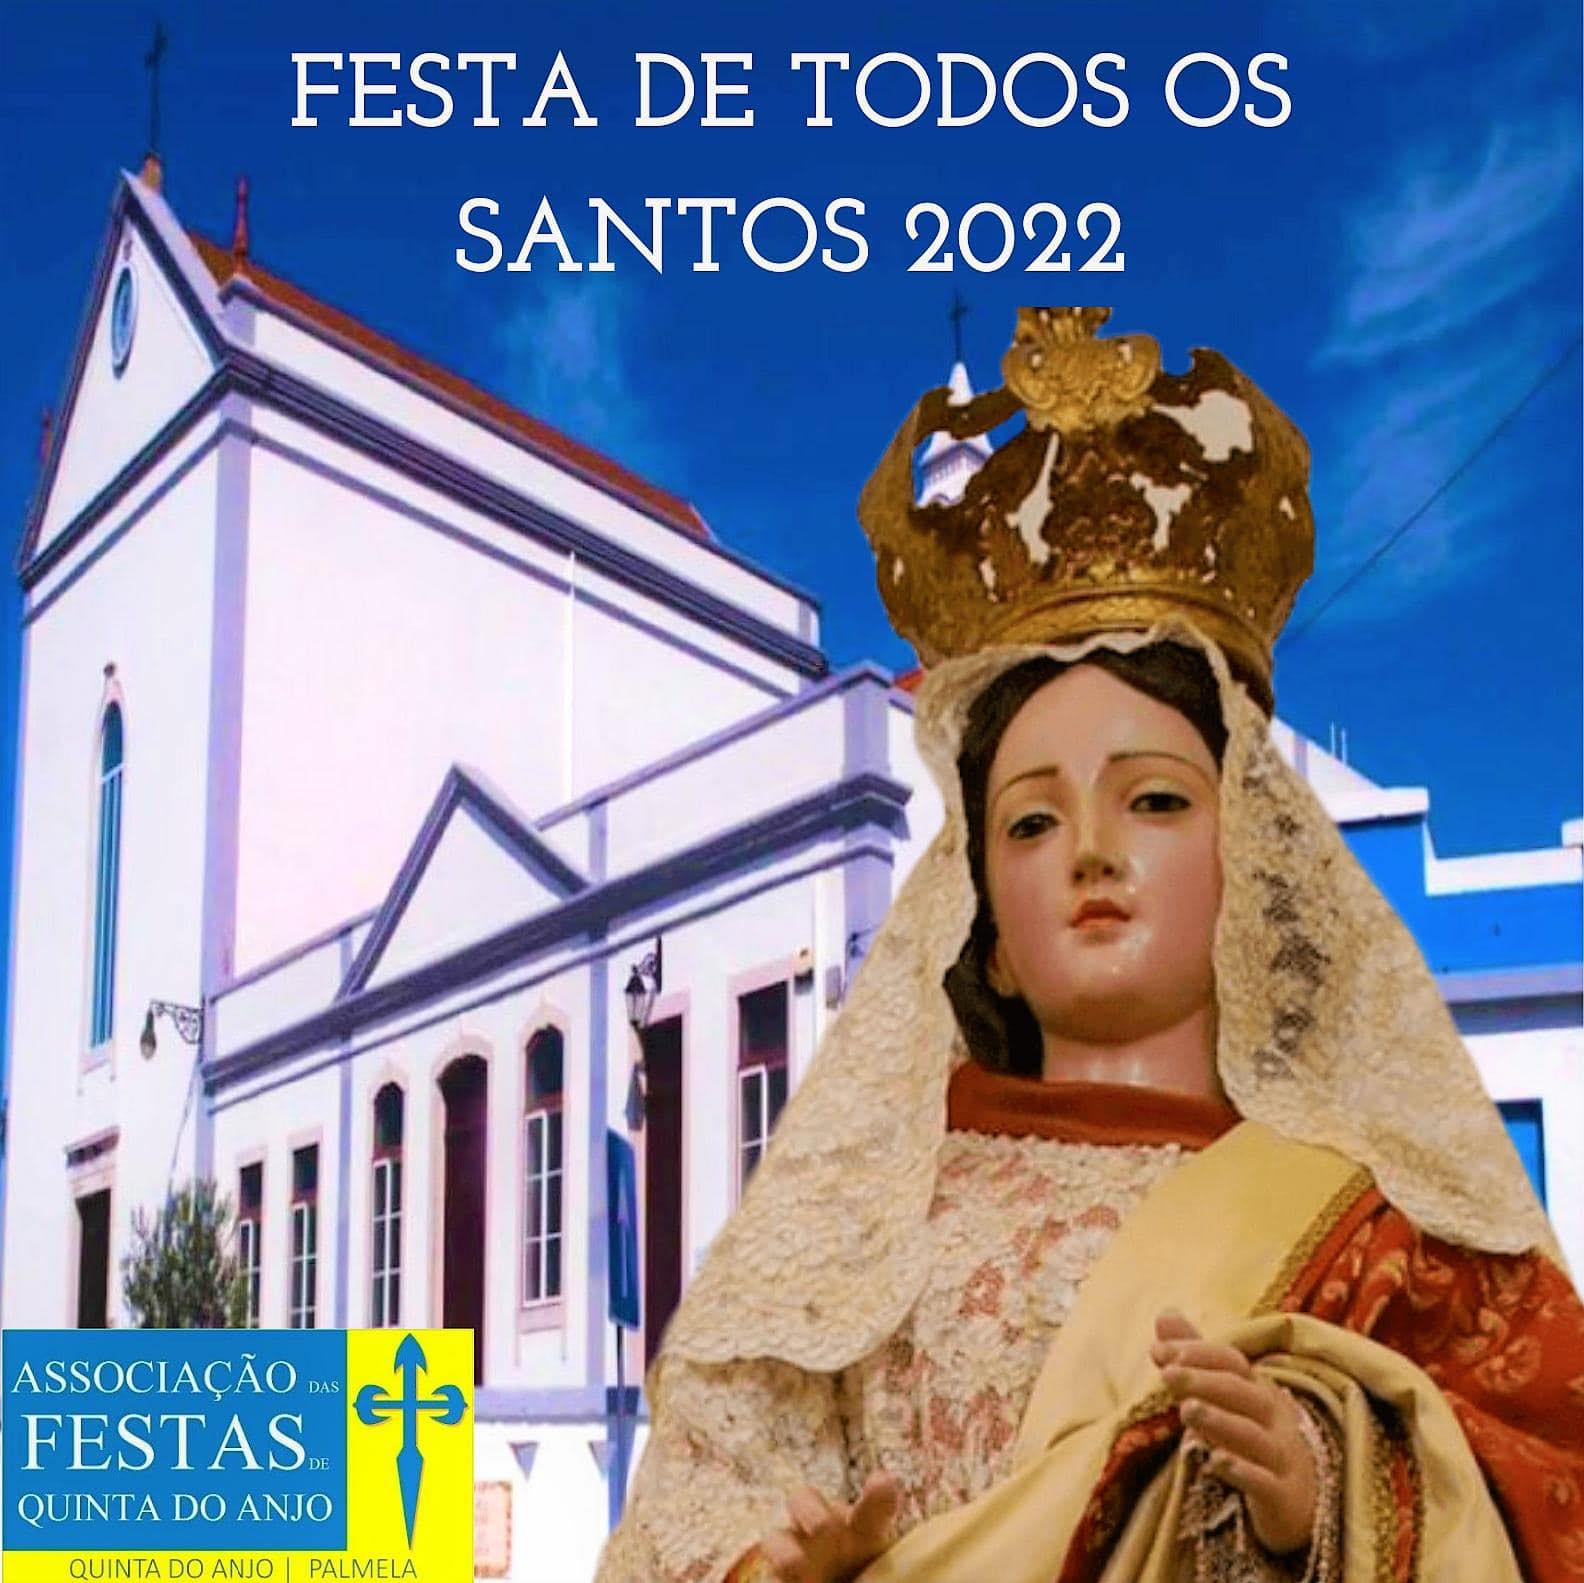 Festa de Todos os Santos em Quinta do Anjo: consulte o programa aqui